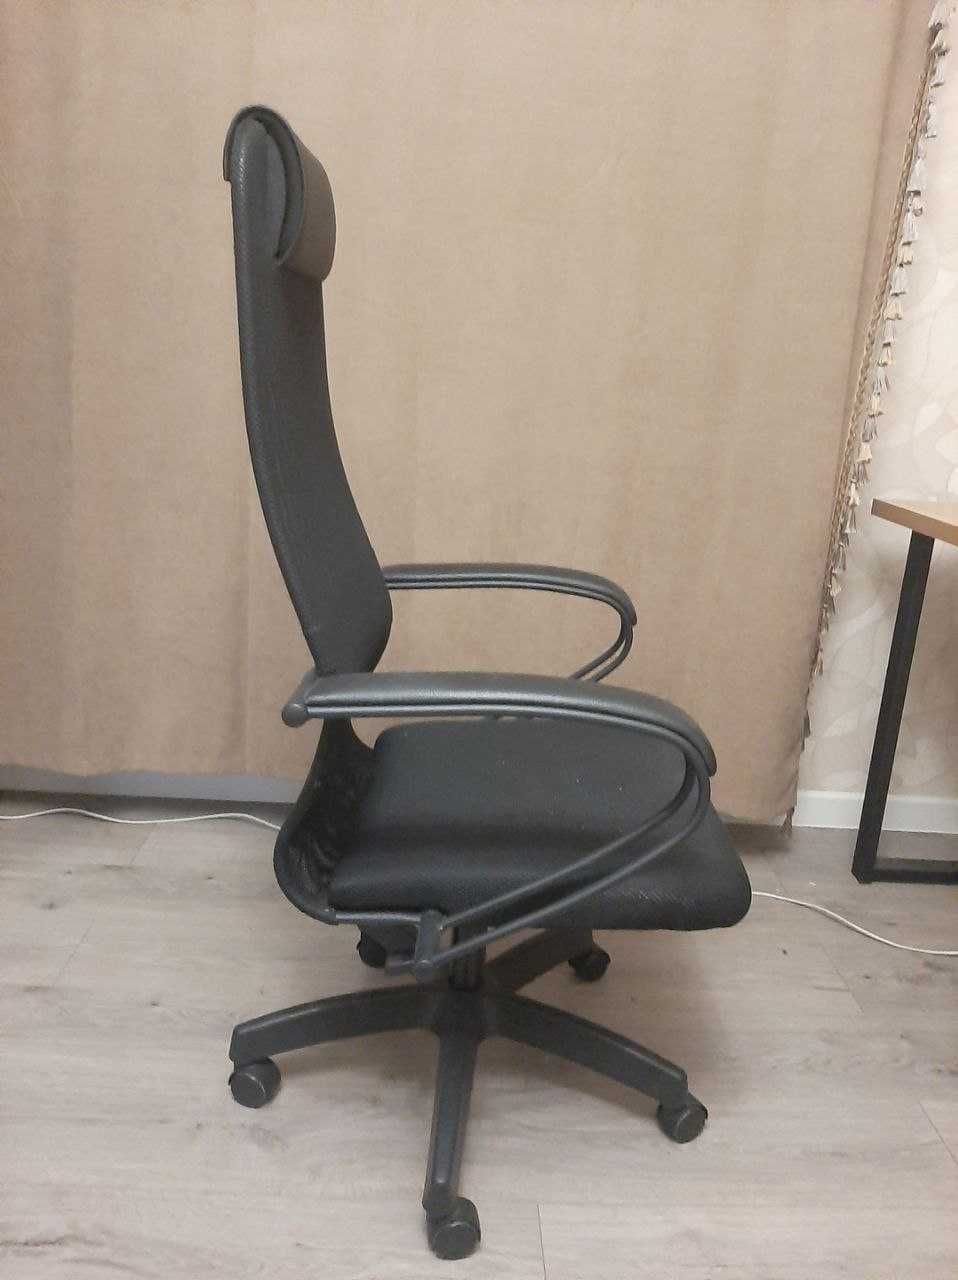 Продам кресло офисное Metta SU-BP-8 черное.В хорошем состоянии